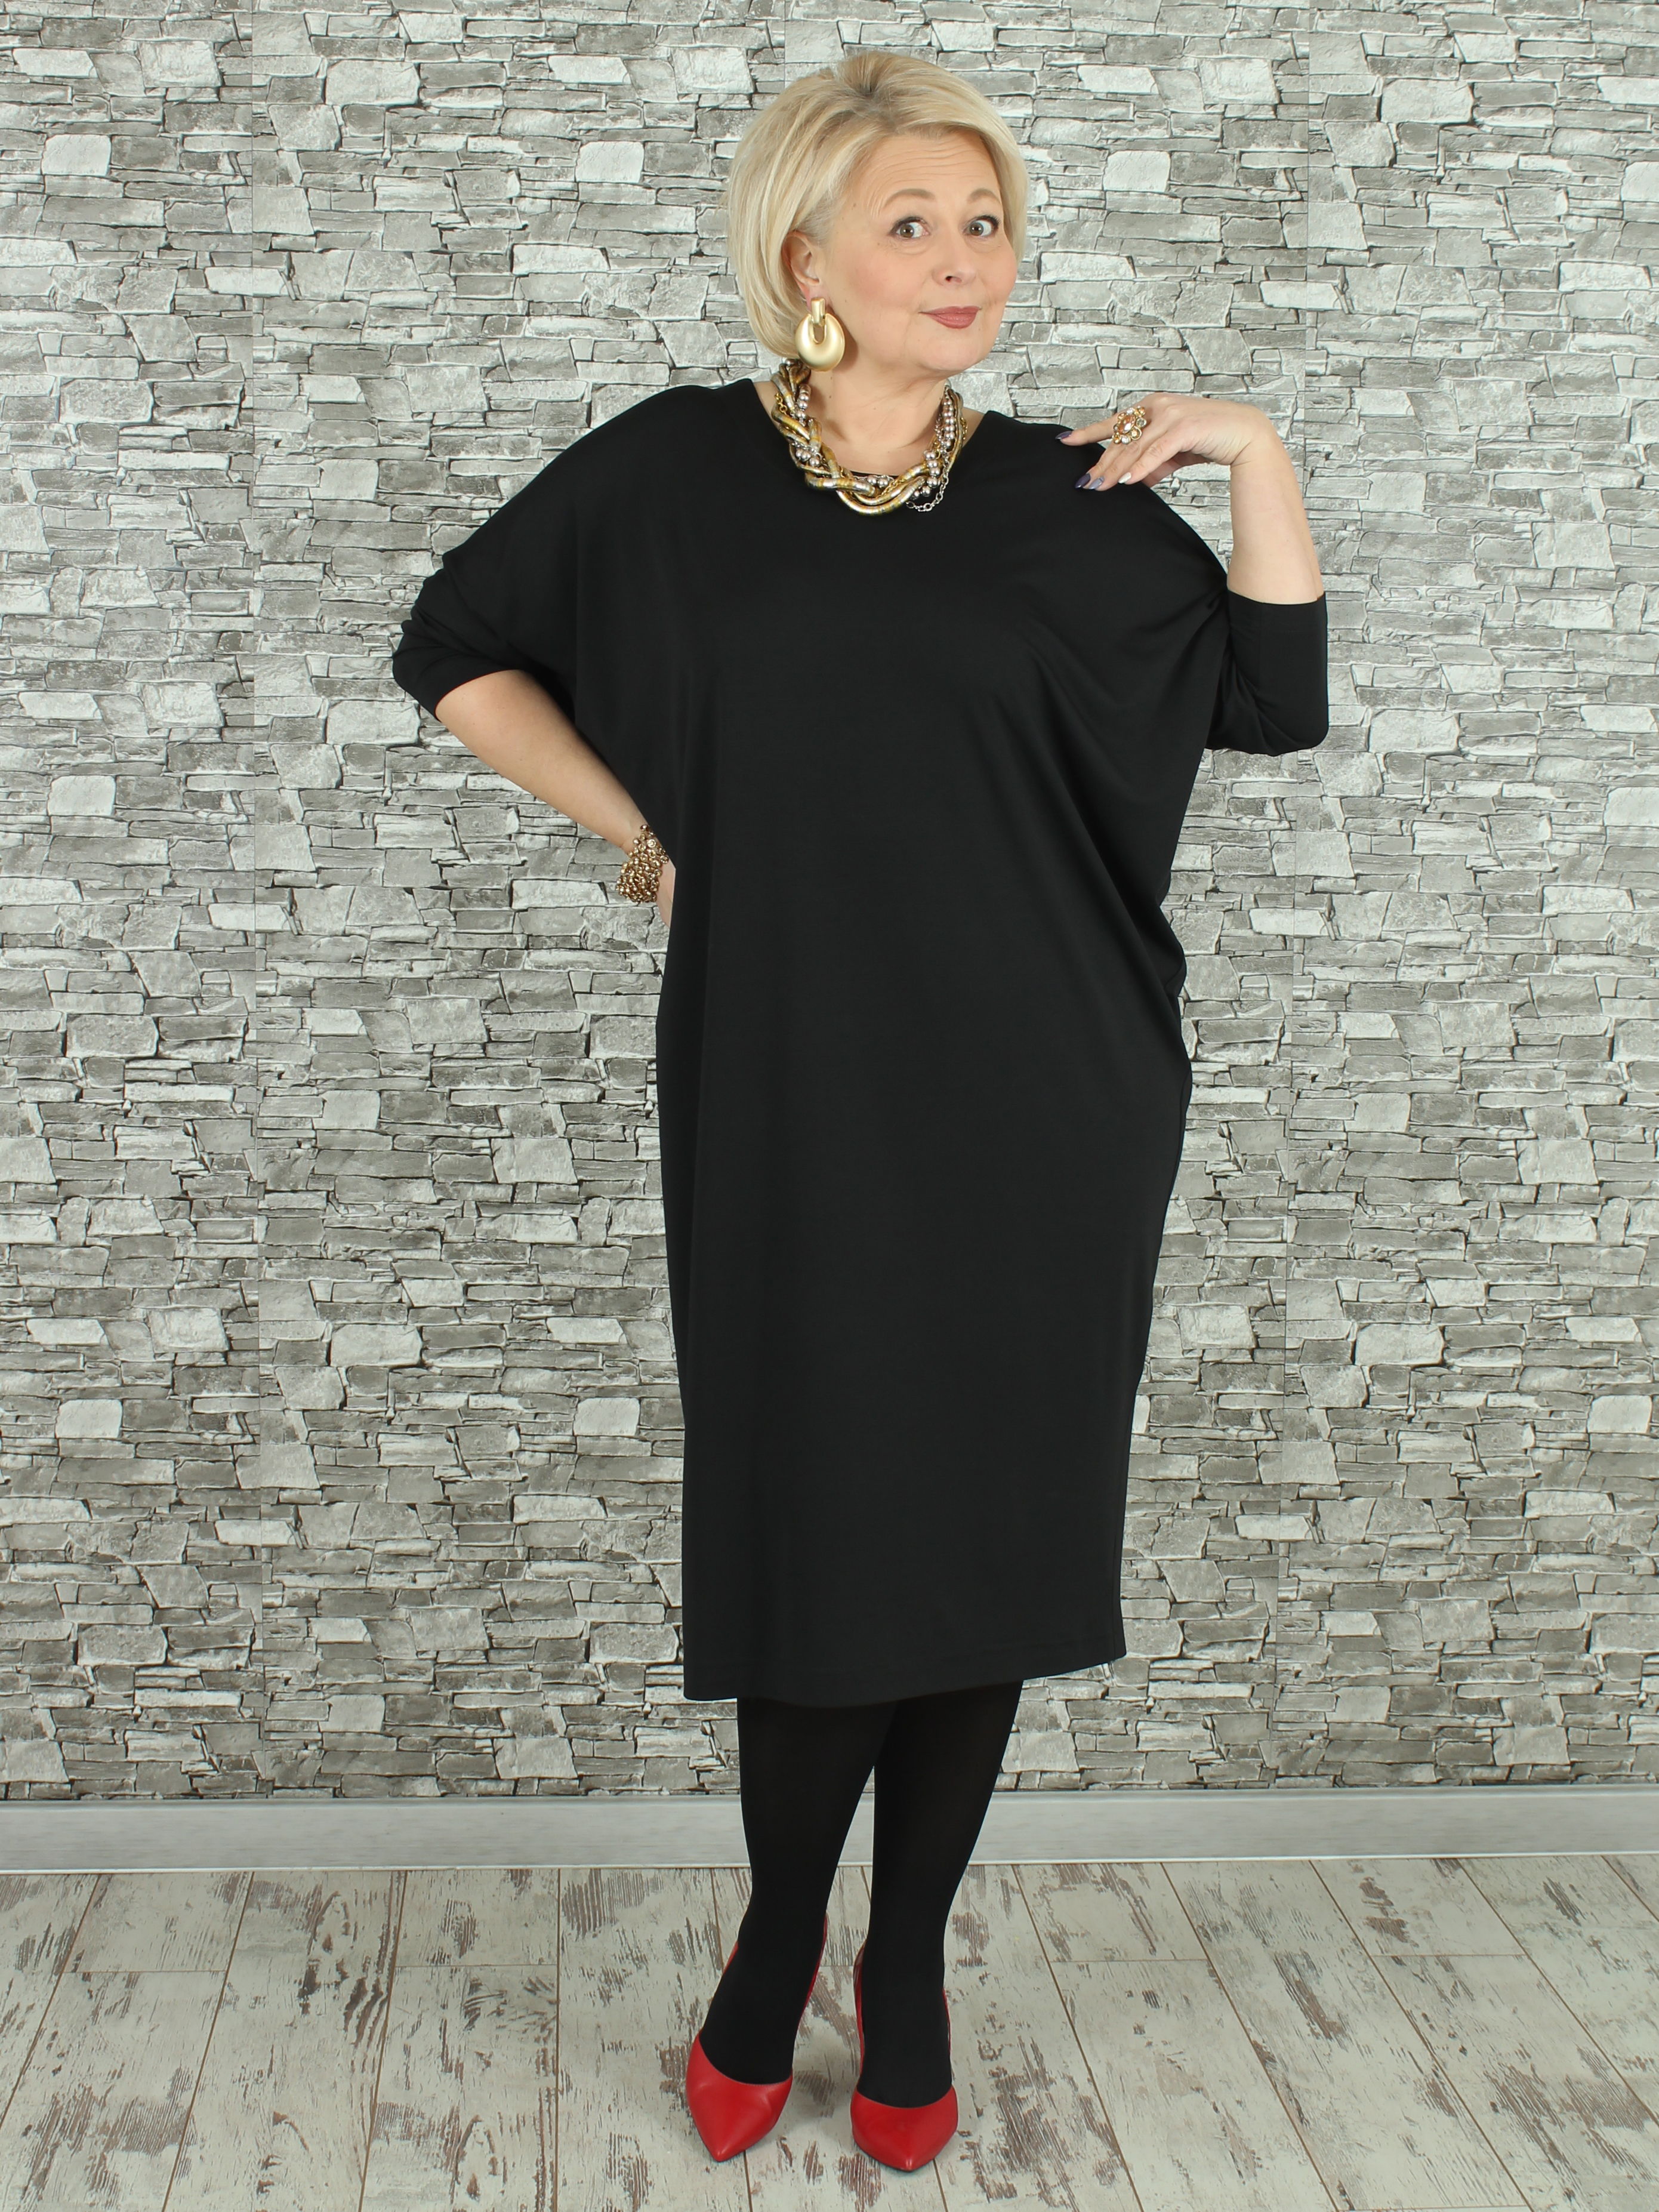 Женское платье NadiN 1629/1 54 размер Чёрное